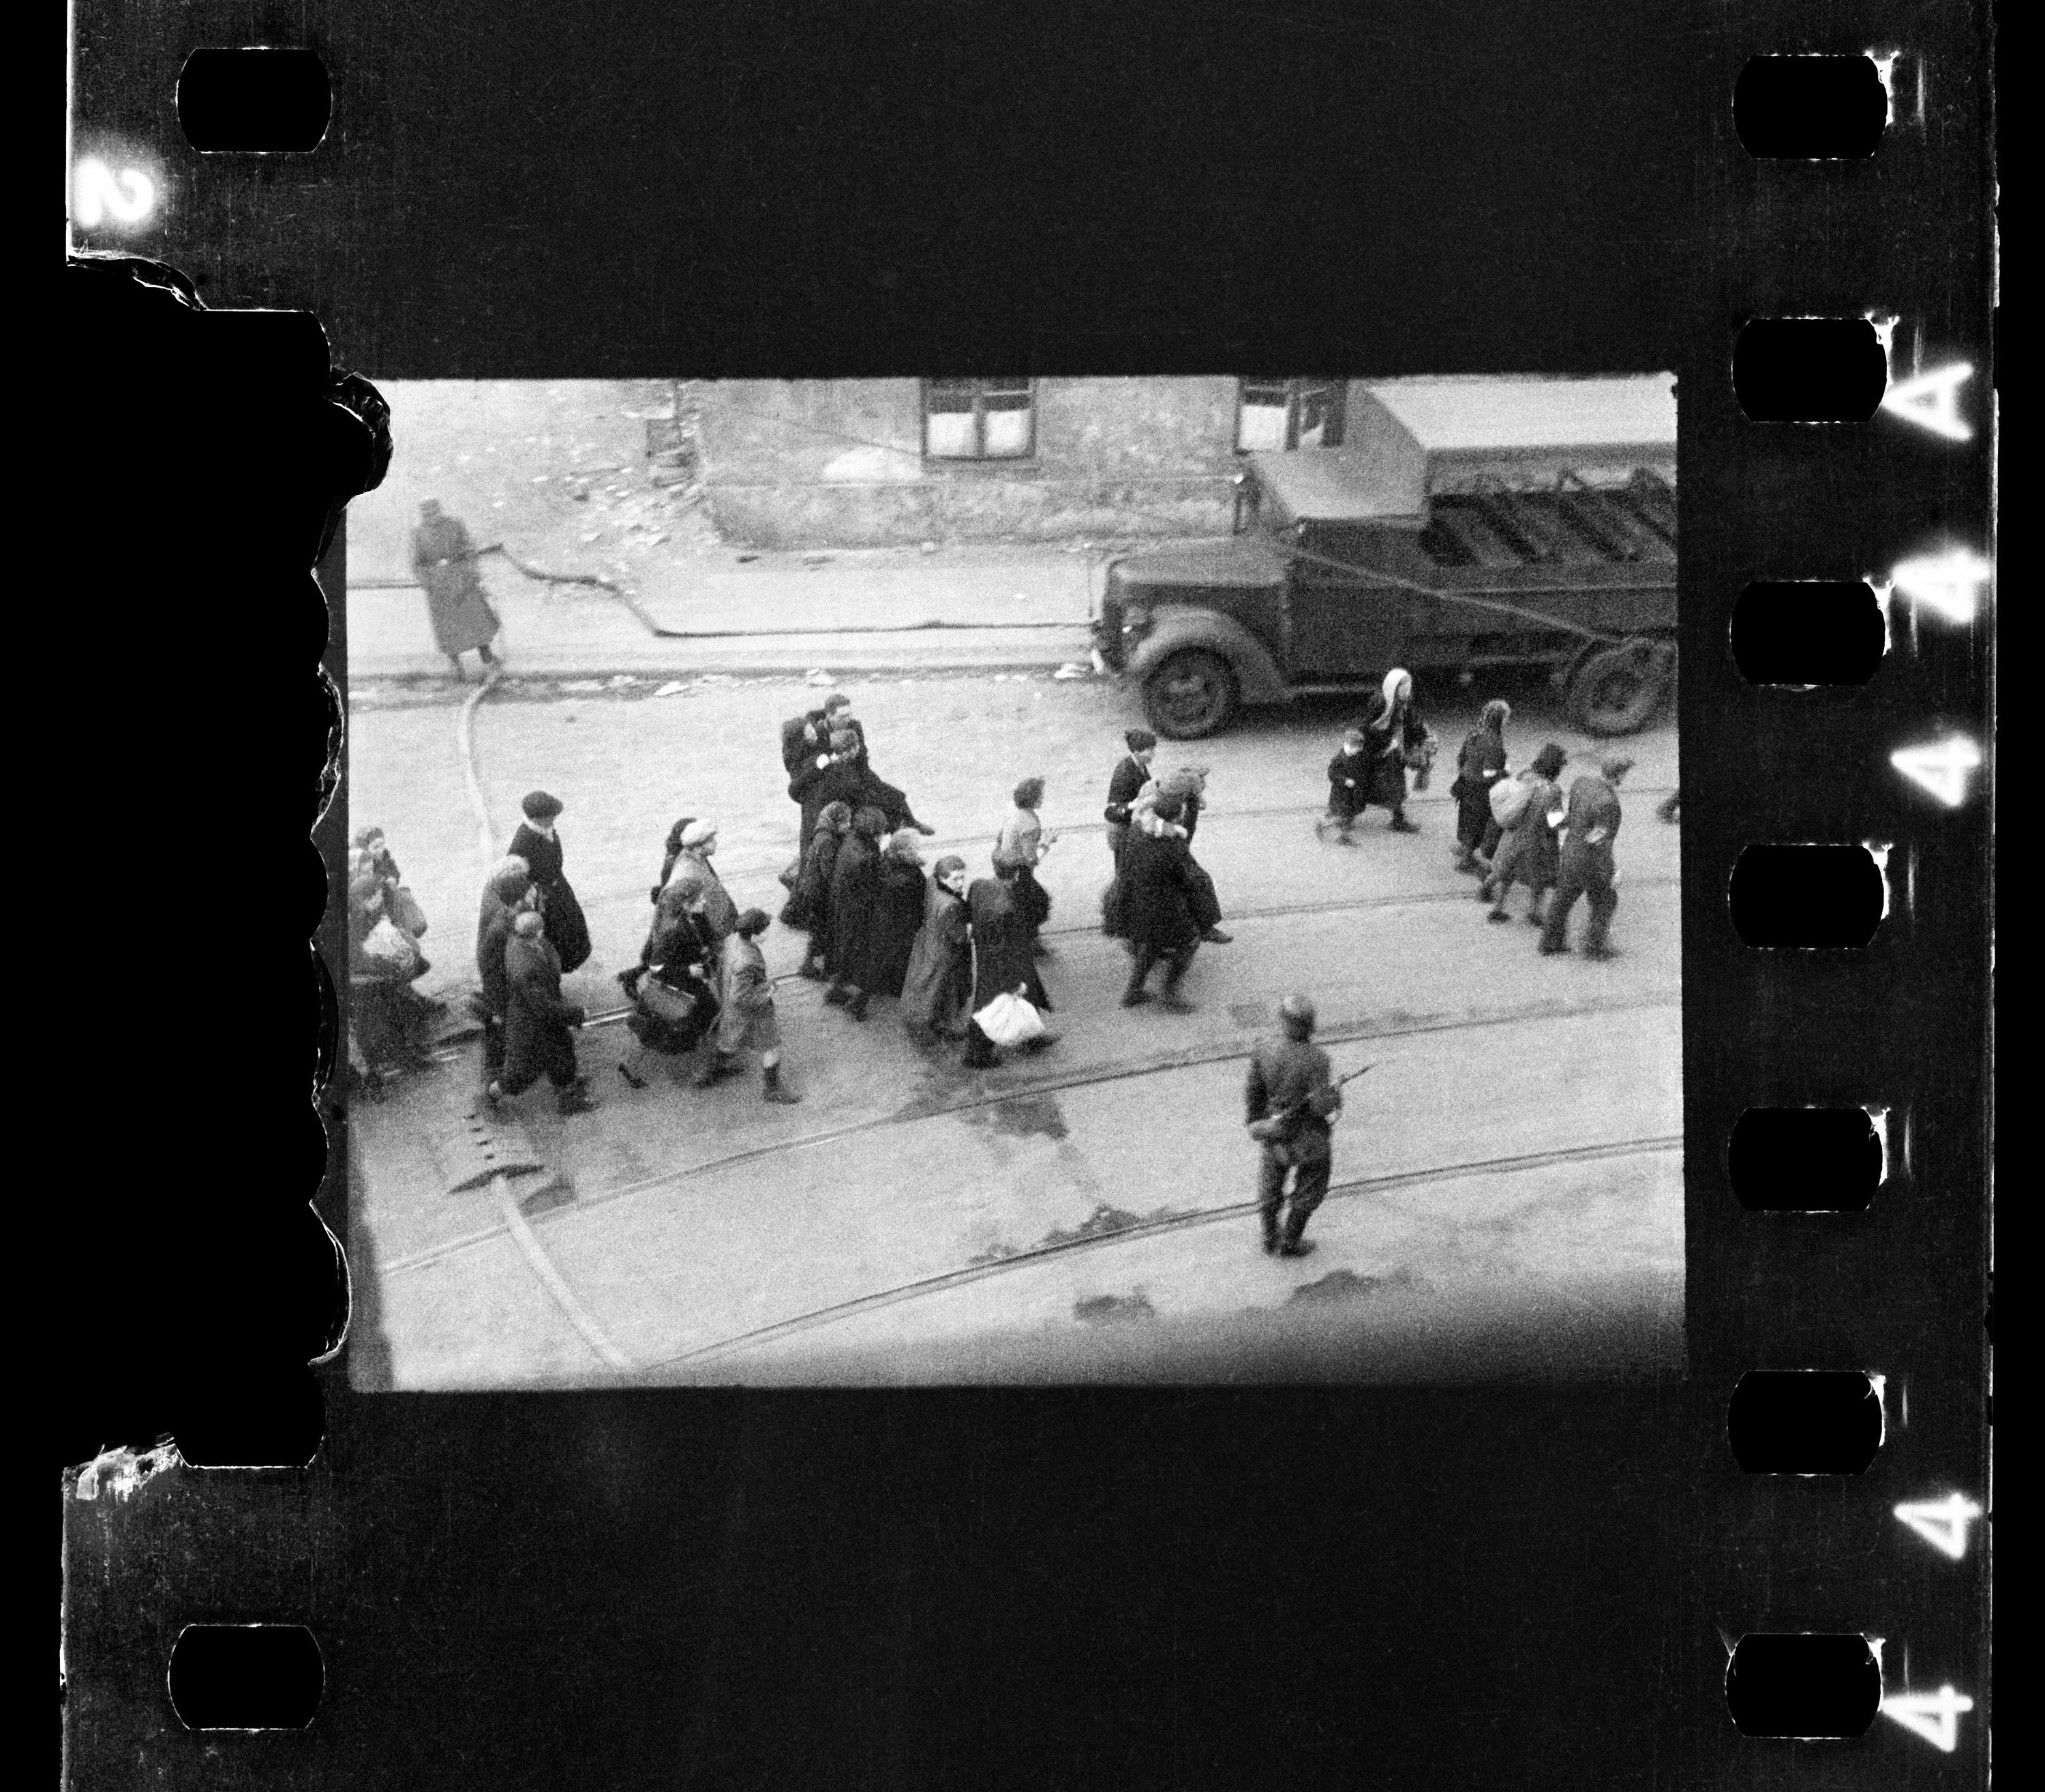 Warszawska ulica. Żydzi prowadzeni przez Niemców na Umschlagplatz. / Warsaw Street - the Jews on their way to Umschlagplatz. Around them there are German soldiers.